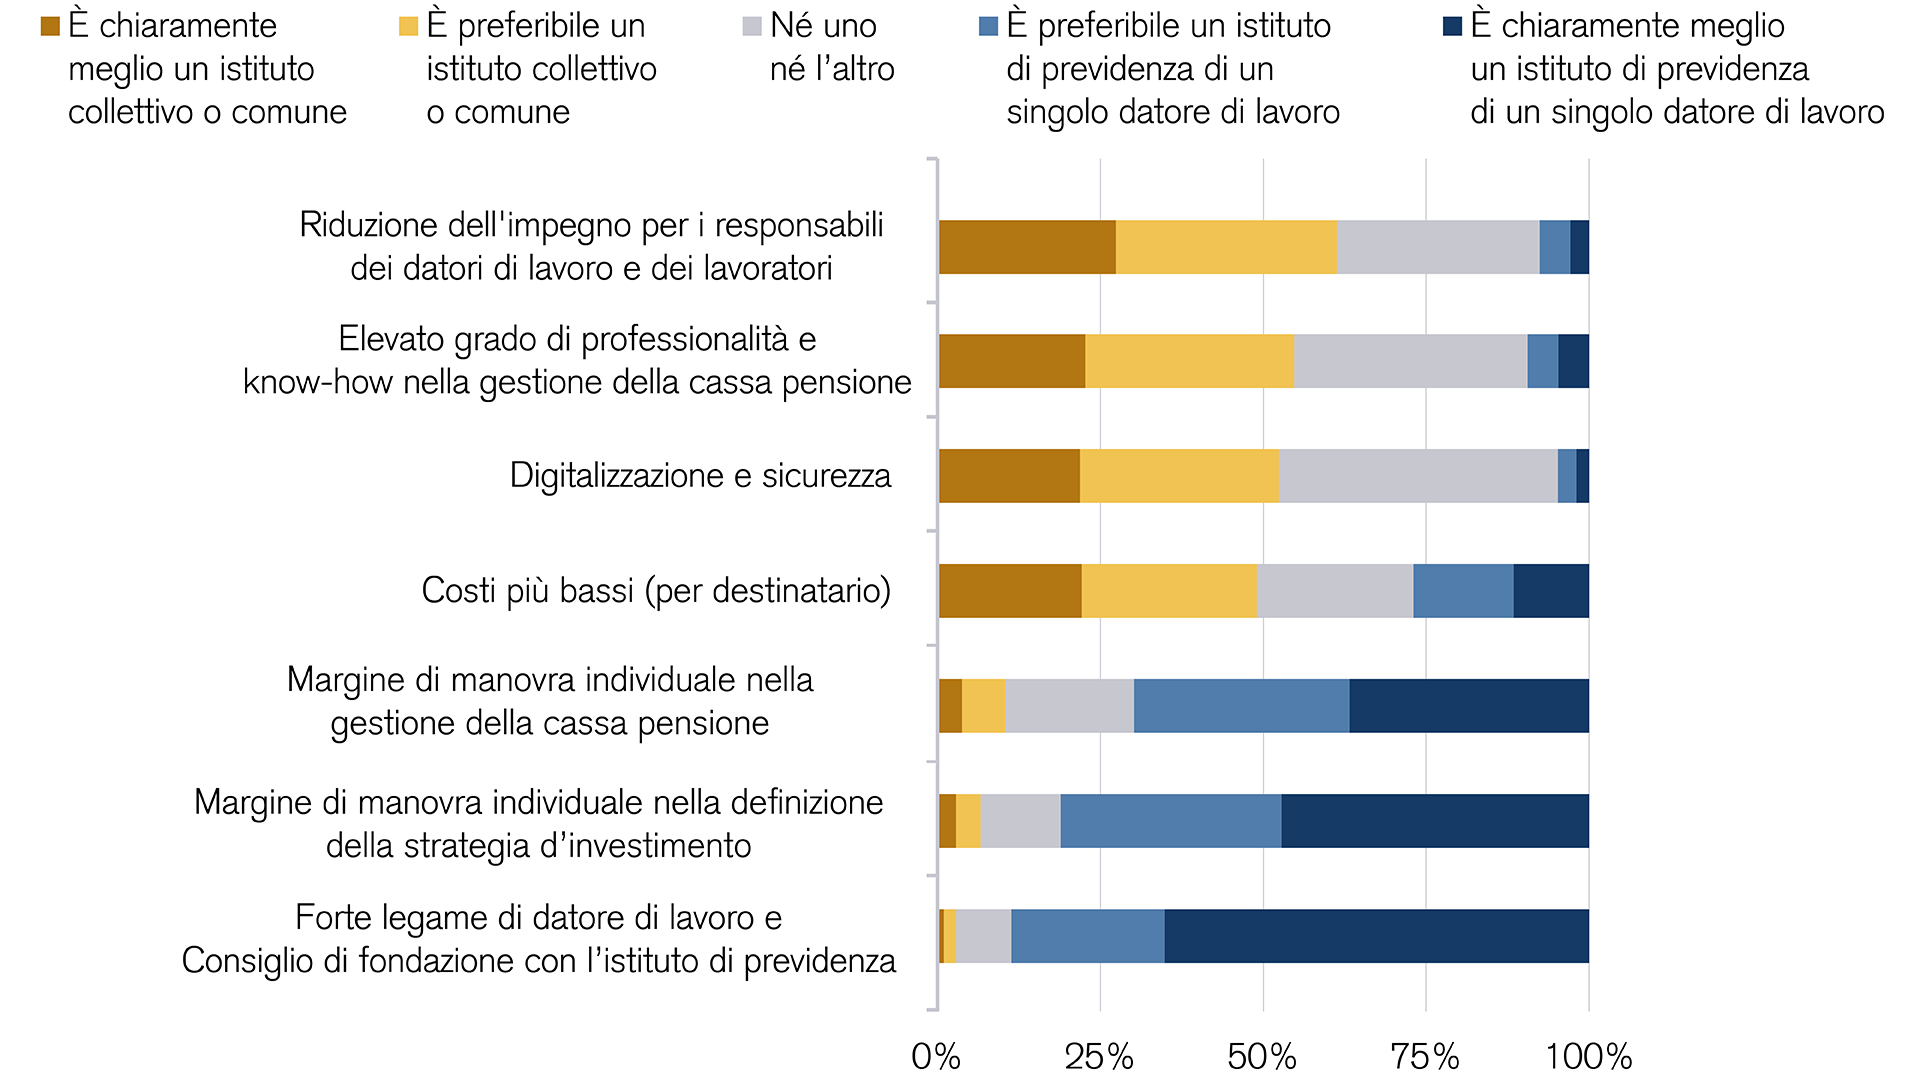 Risultati del sondaggio sugli istituti collettivi e comuni rispetto agli istituti di previdenza di singoli datori di lavoro